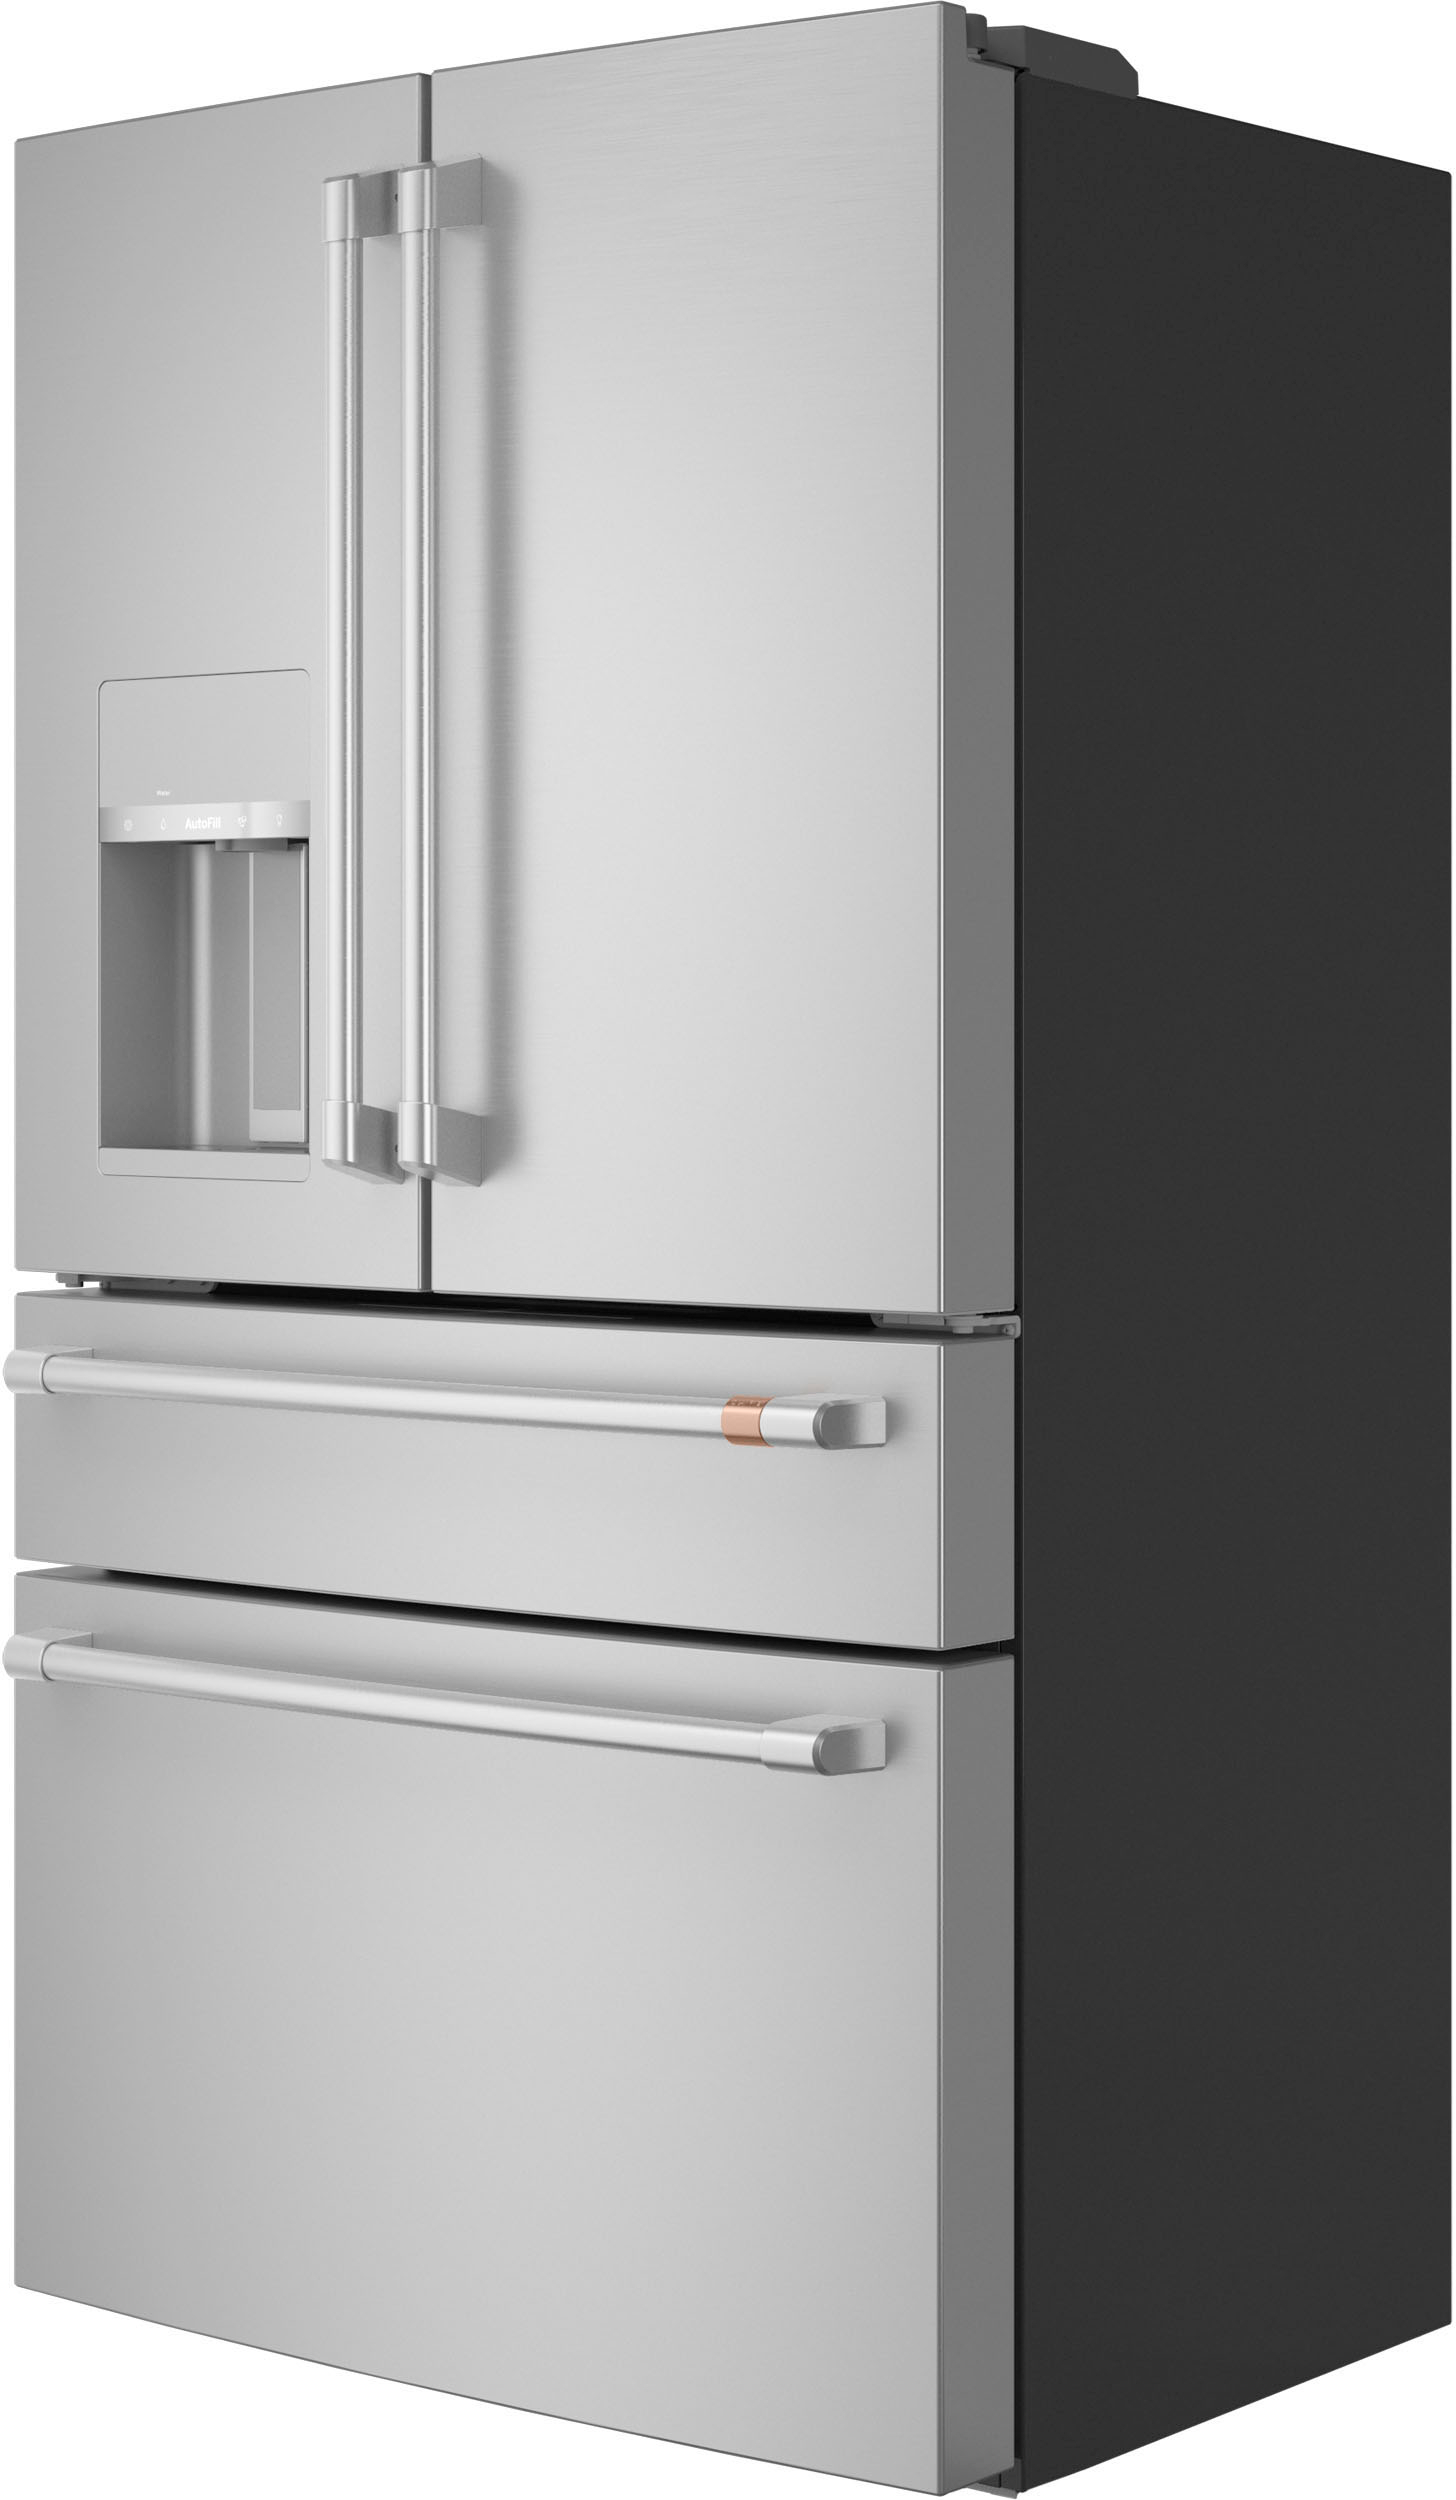 Left View: Café - 22.3 Cu. Ft. 4-Door French Door Counter-Depth Smart Refrigerator - Stainless steel